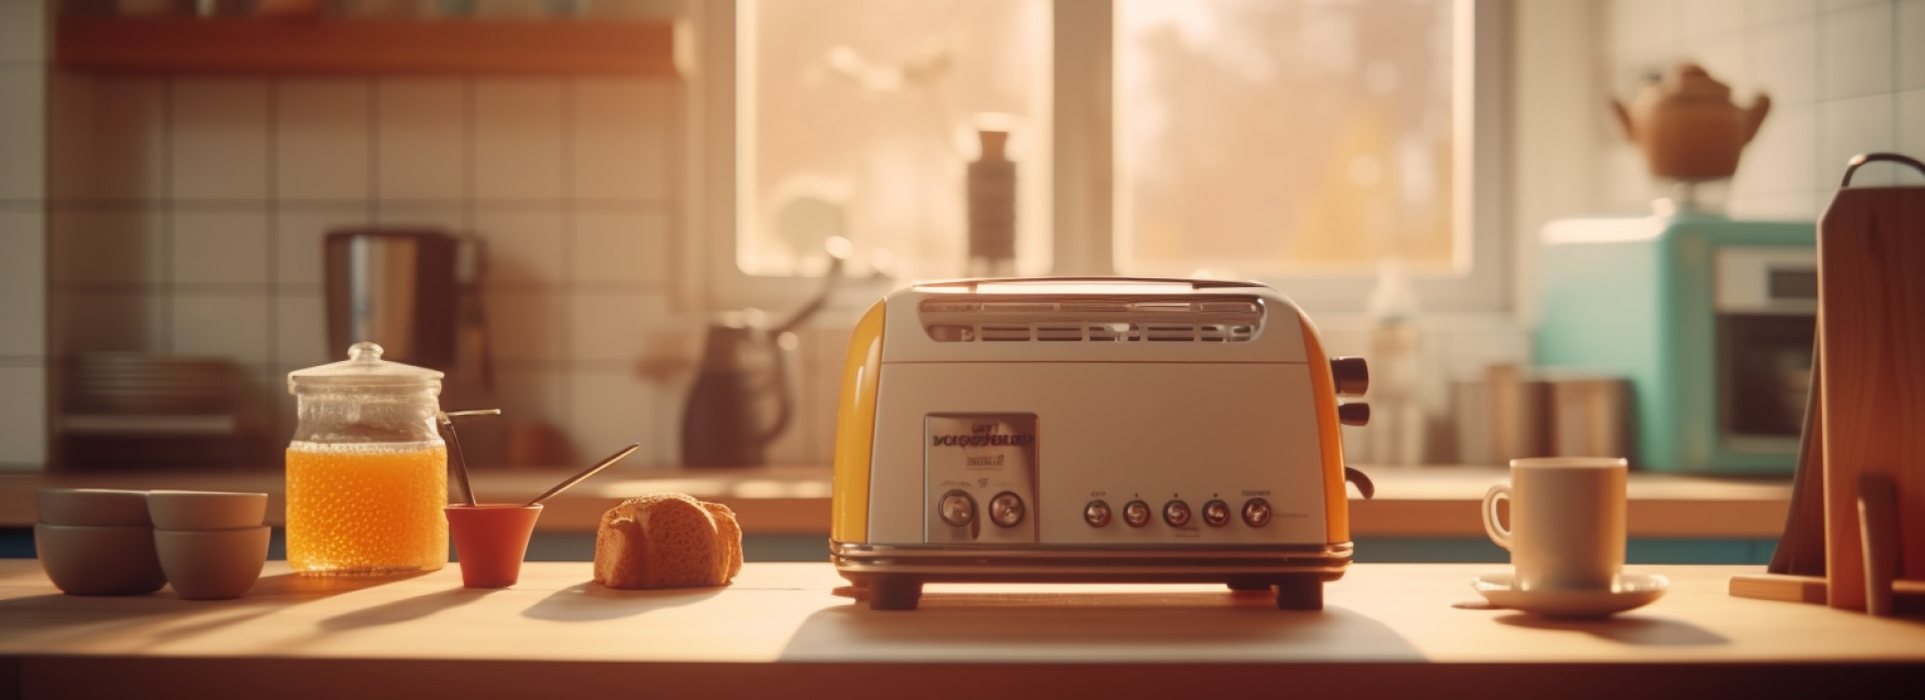 Toaster électrique économe en énergie pour une cuisine économique d'énergie